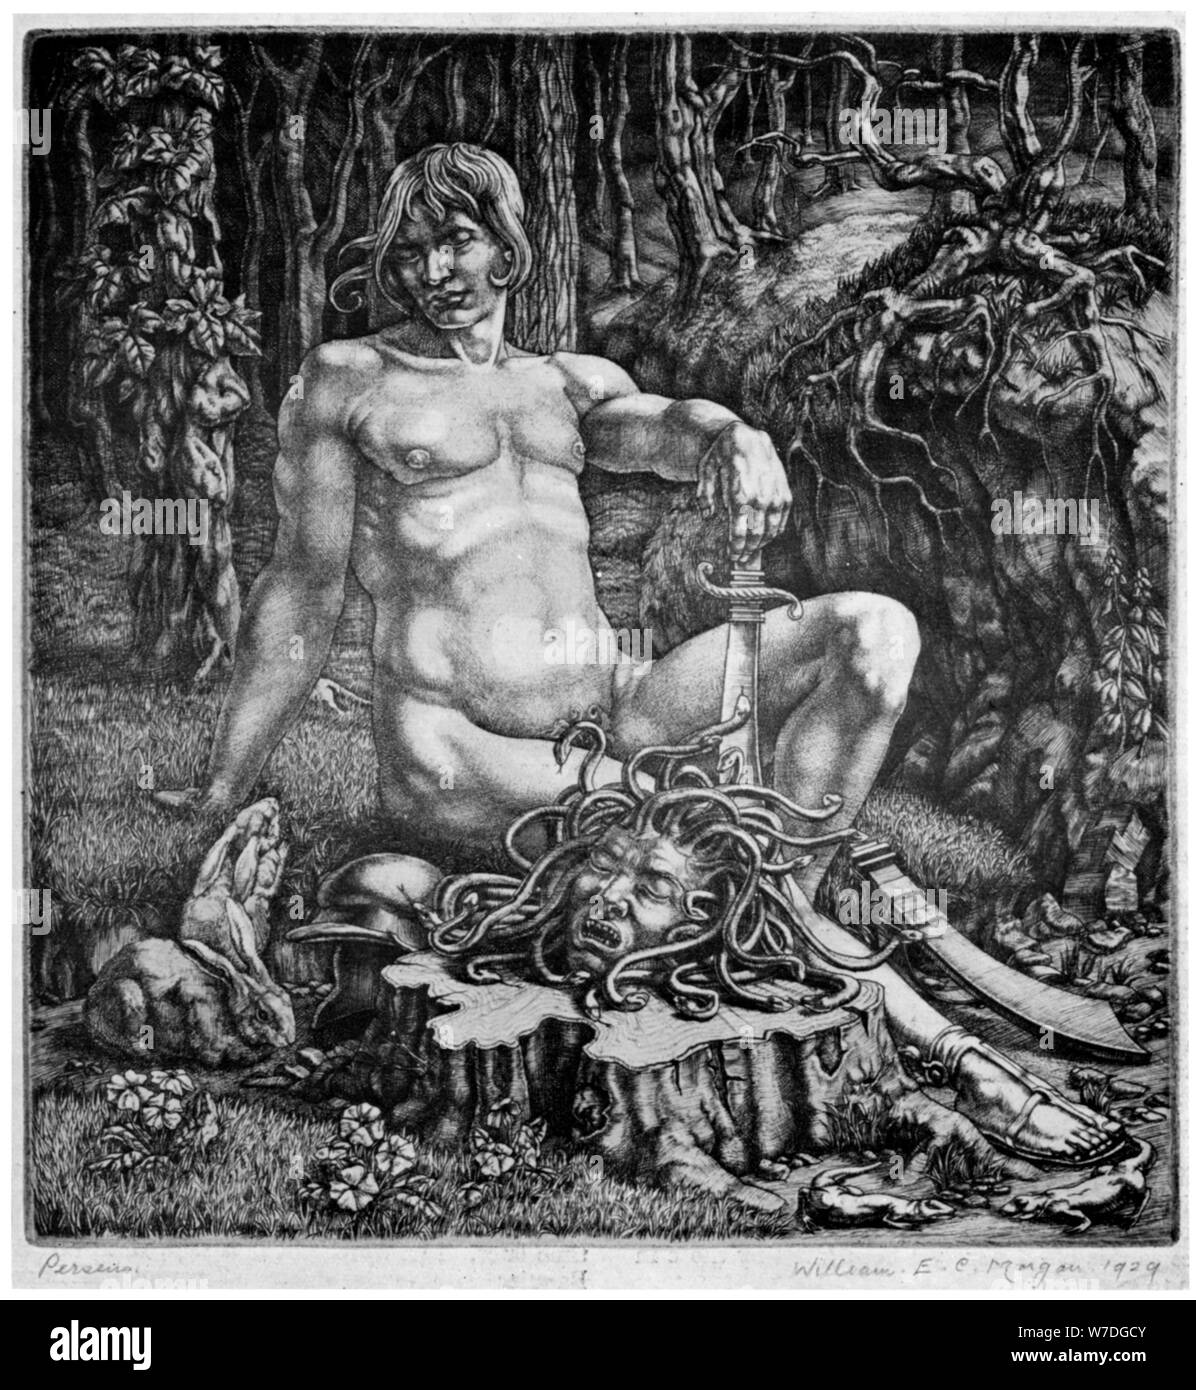 'Perseus', 1929 (1930).Artist: William EC Morgan Stock Photo